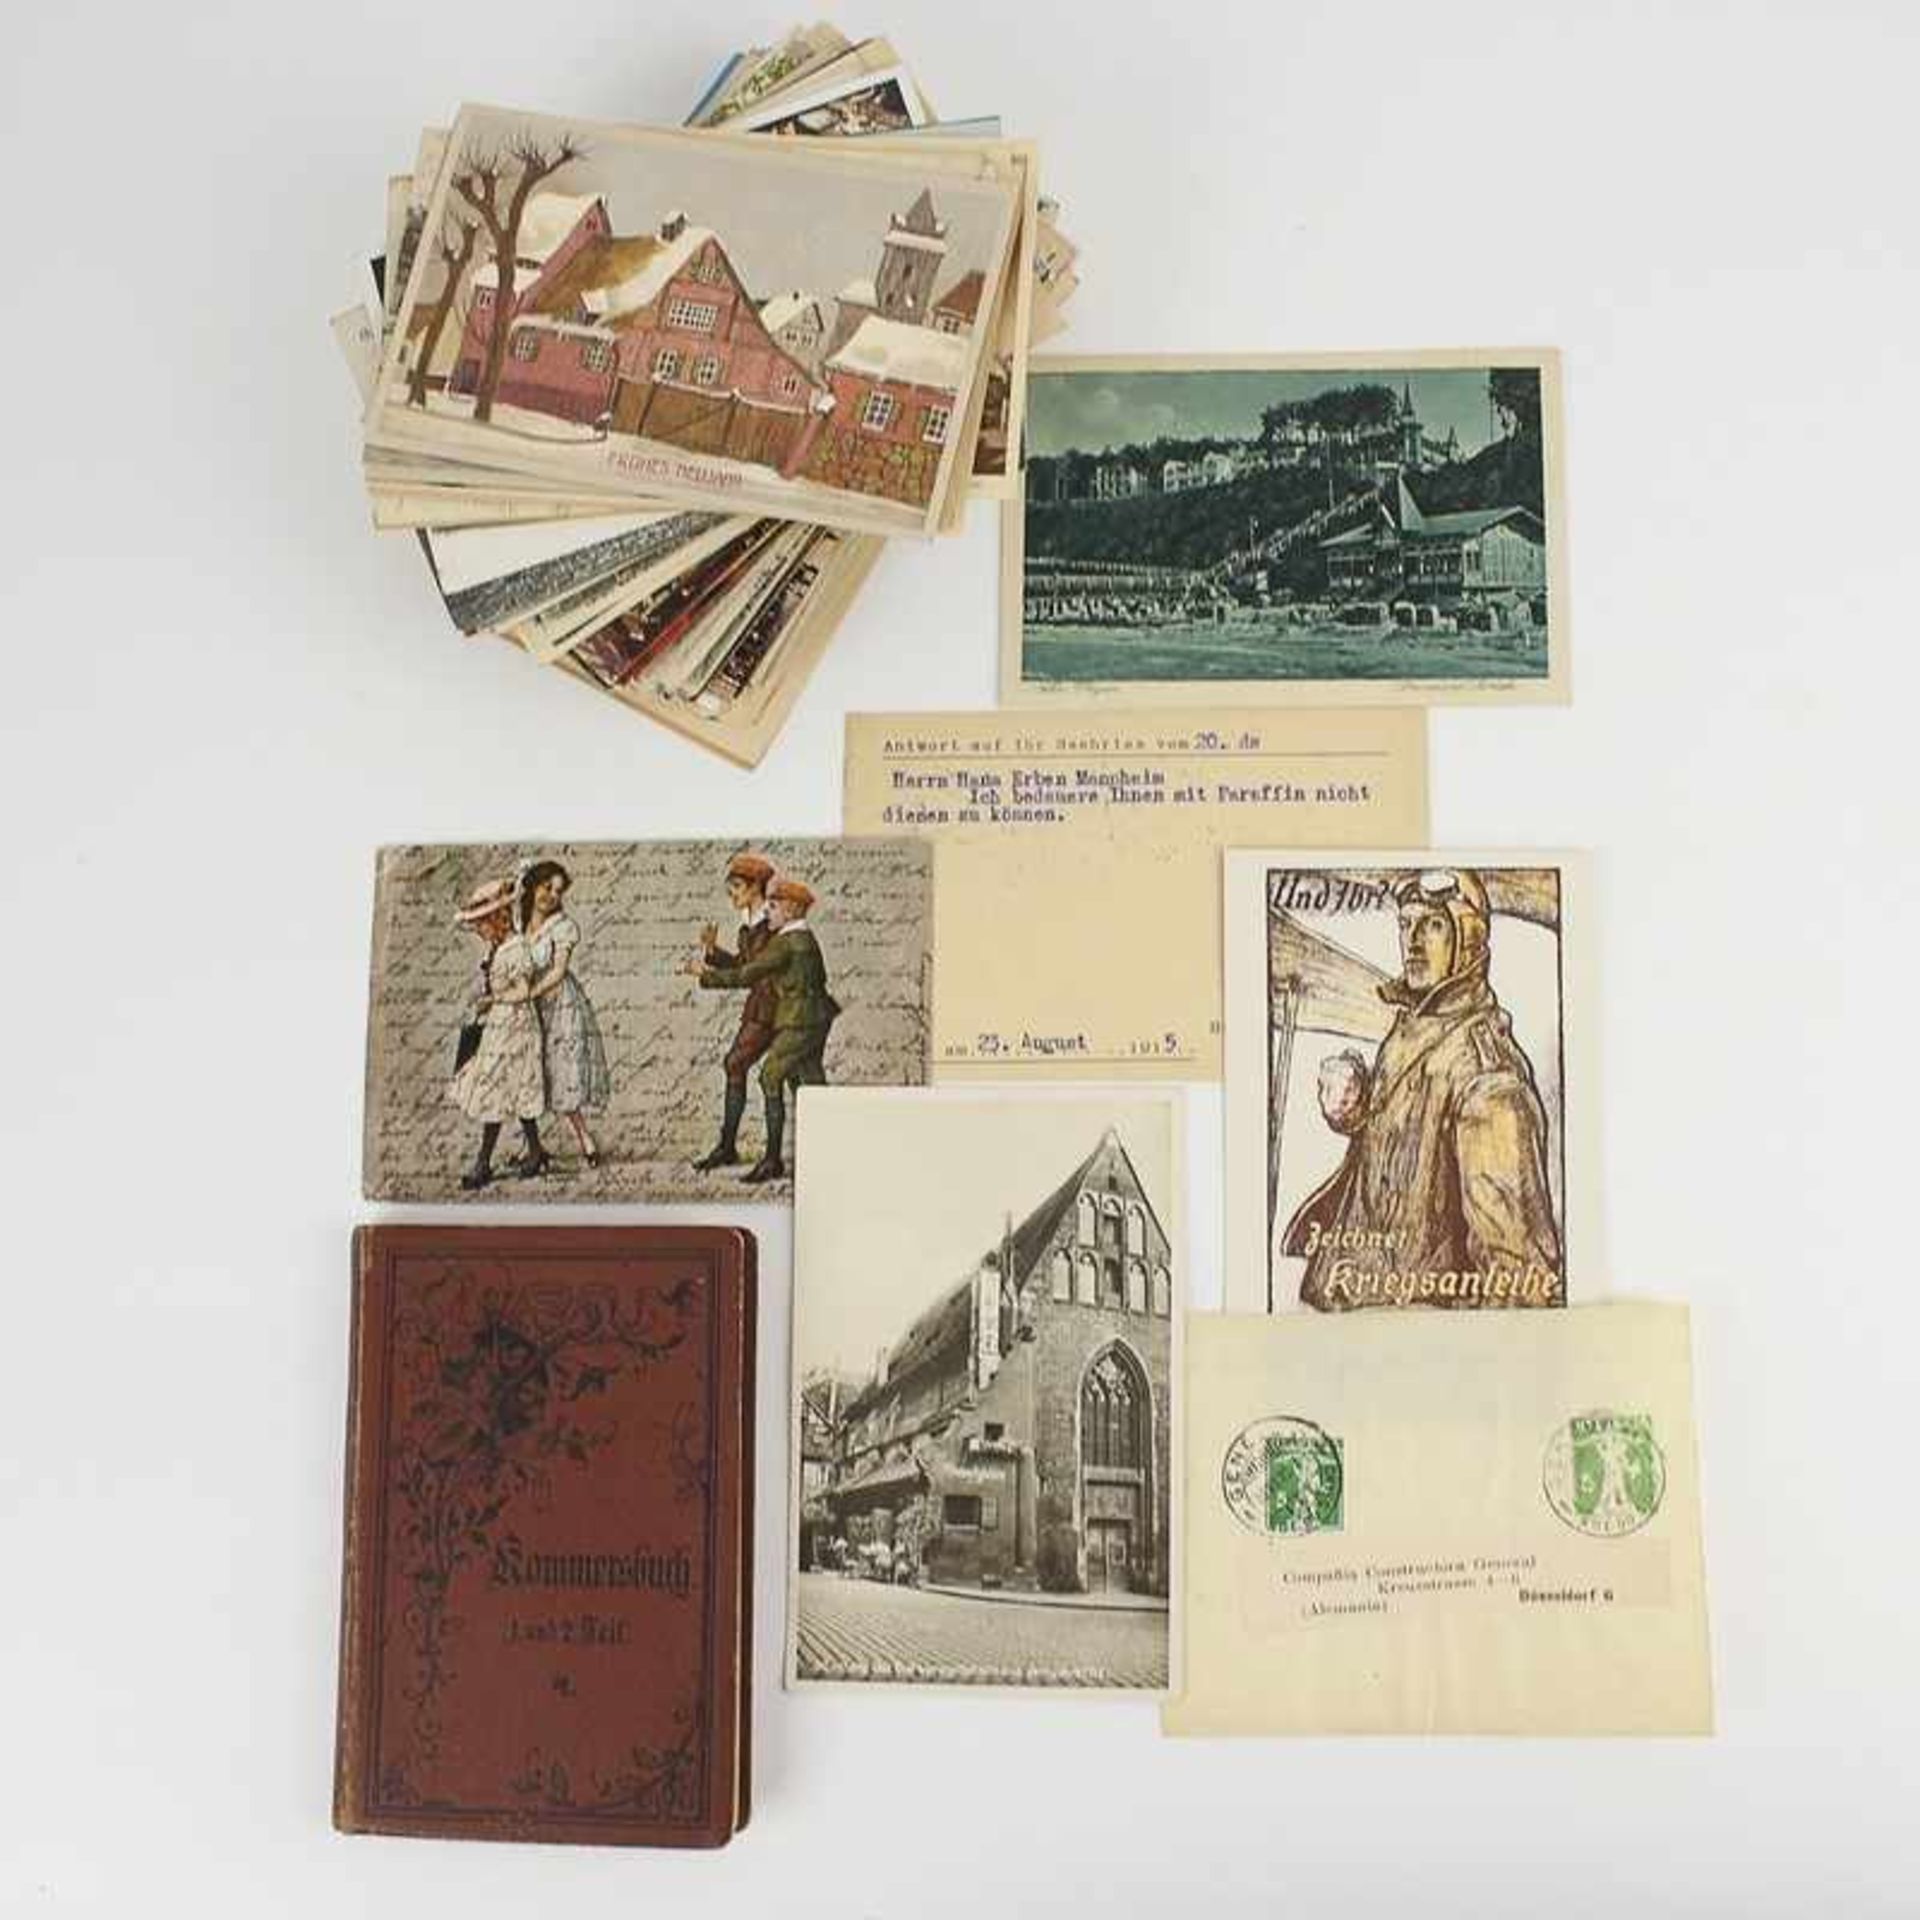 Postkarten ab ca. 1910, s./w. u. farb. lithogr., Stadtansichten, Kinder, Ganzsachen, Briefe,